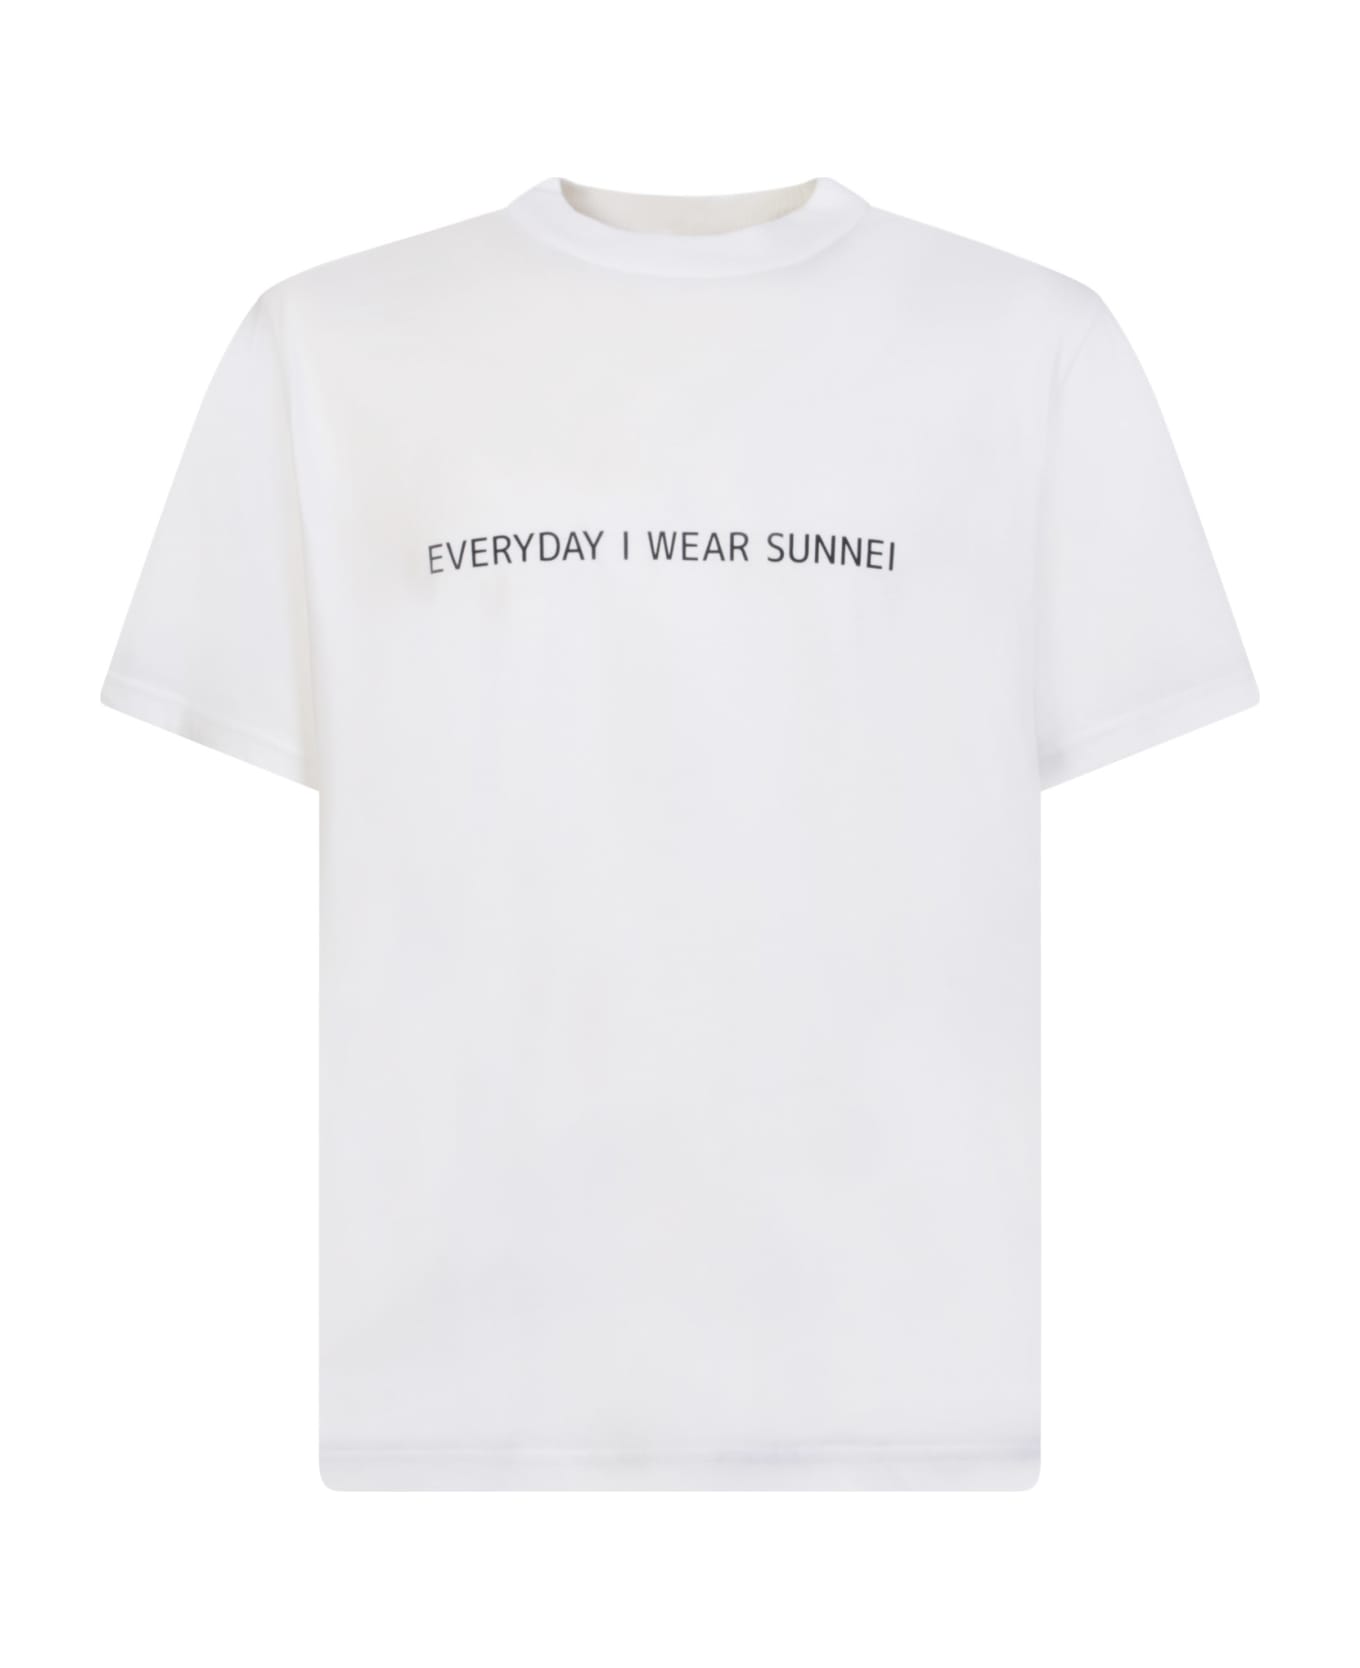 Sunnei T-shirt Everyday I Wear Sunnei"" - White シャツ